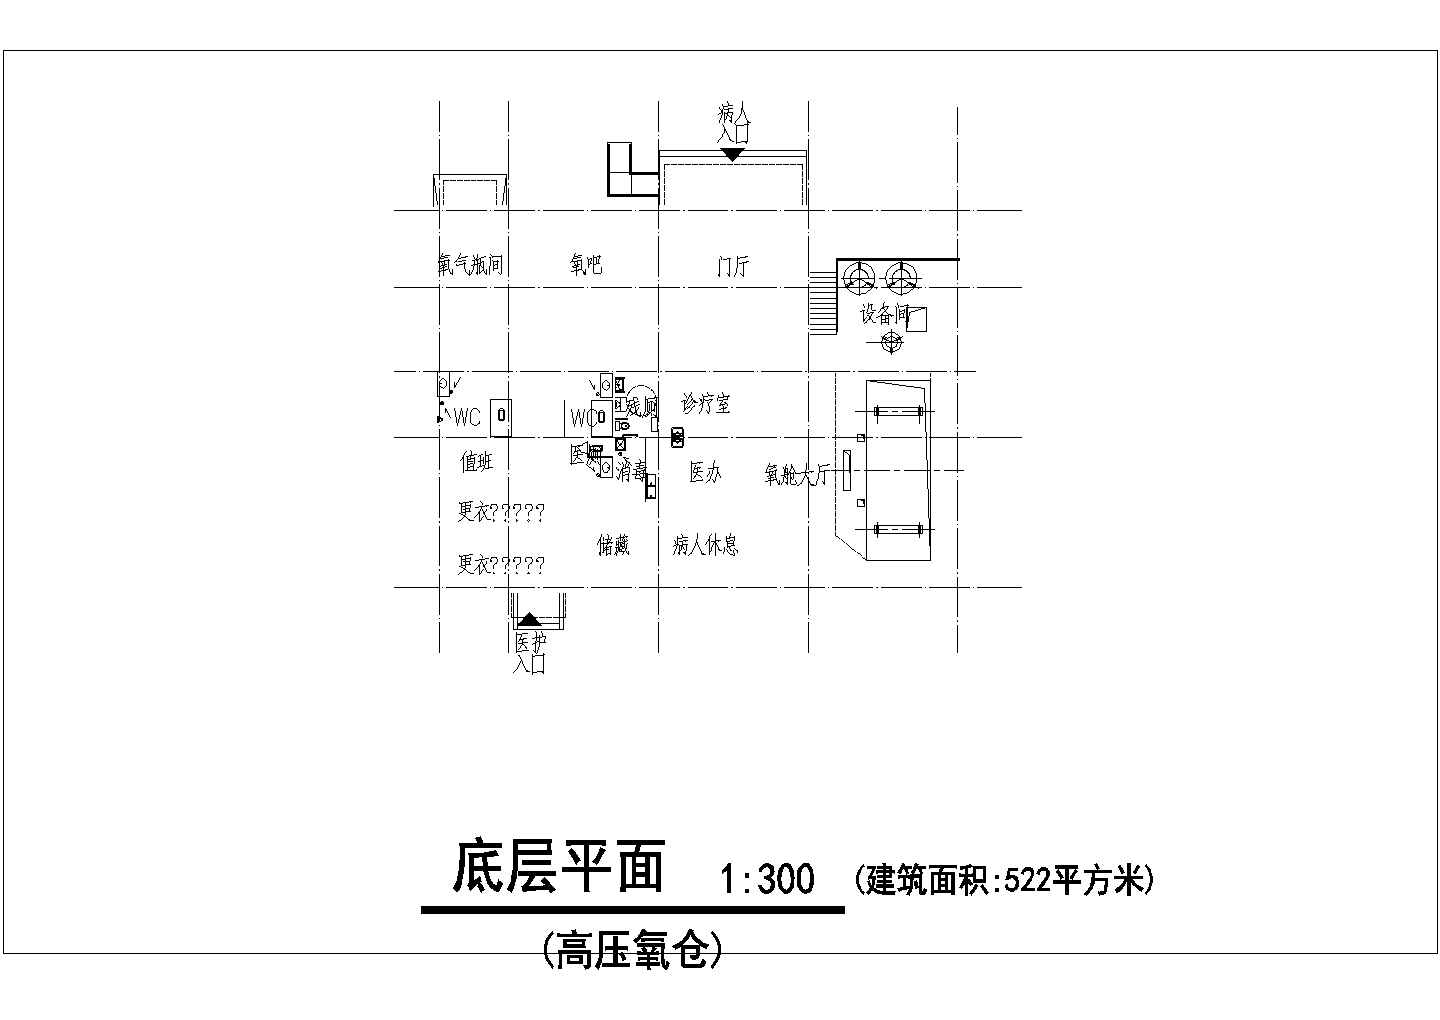 【苏州】某人民医院高压氧舱全套建筑扩初图(含屋顶平面图)